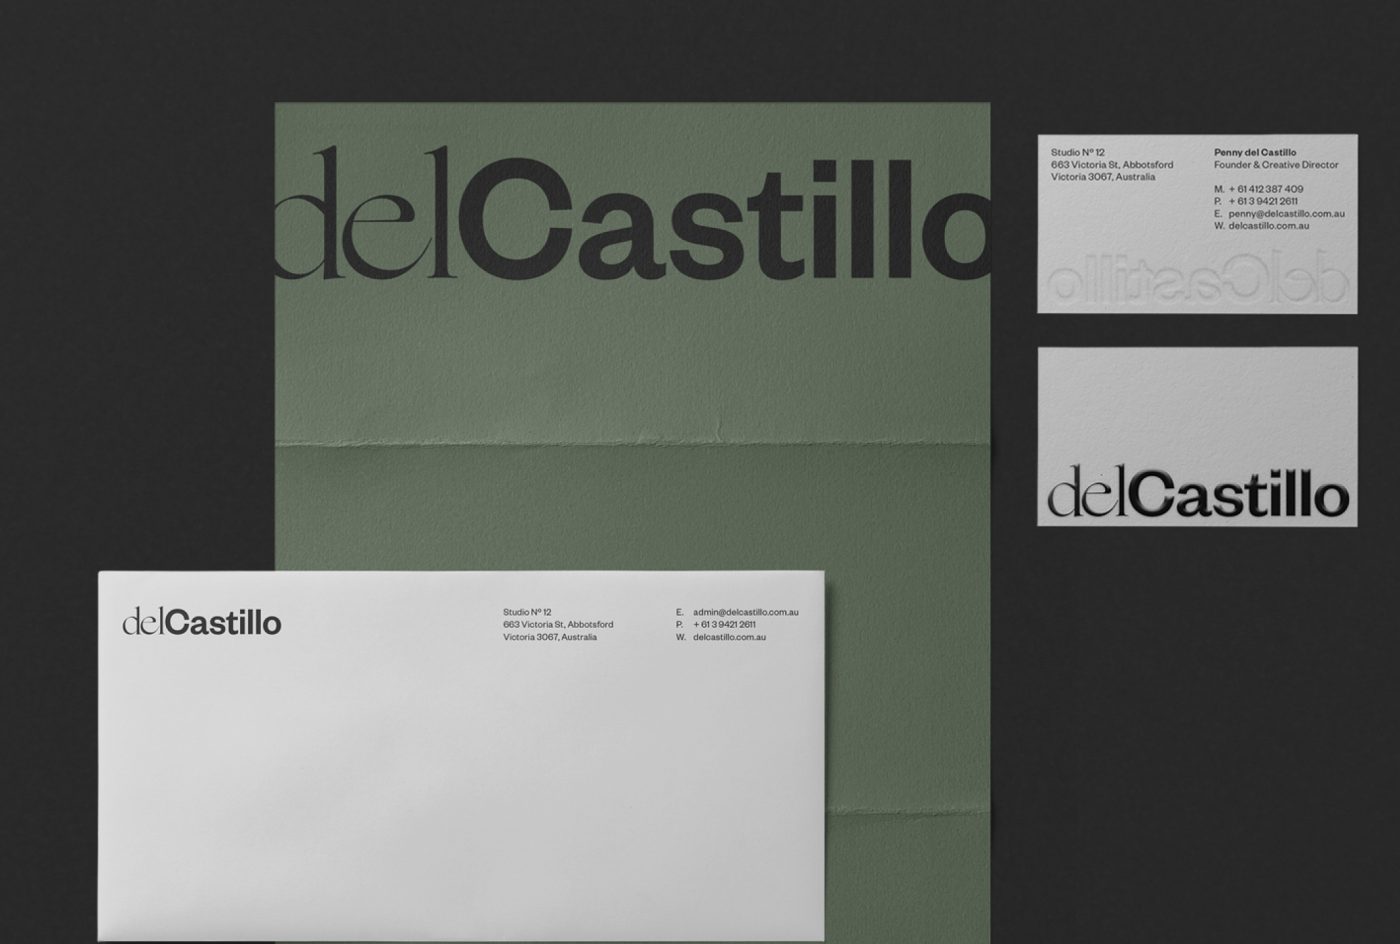 del Castillo letterheads in white and green